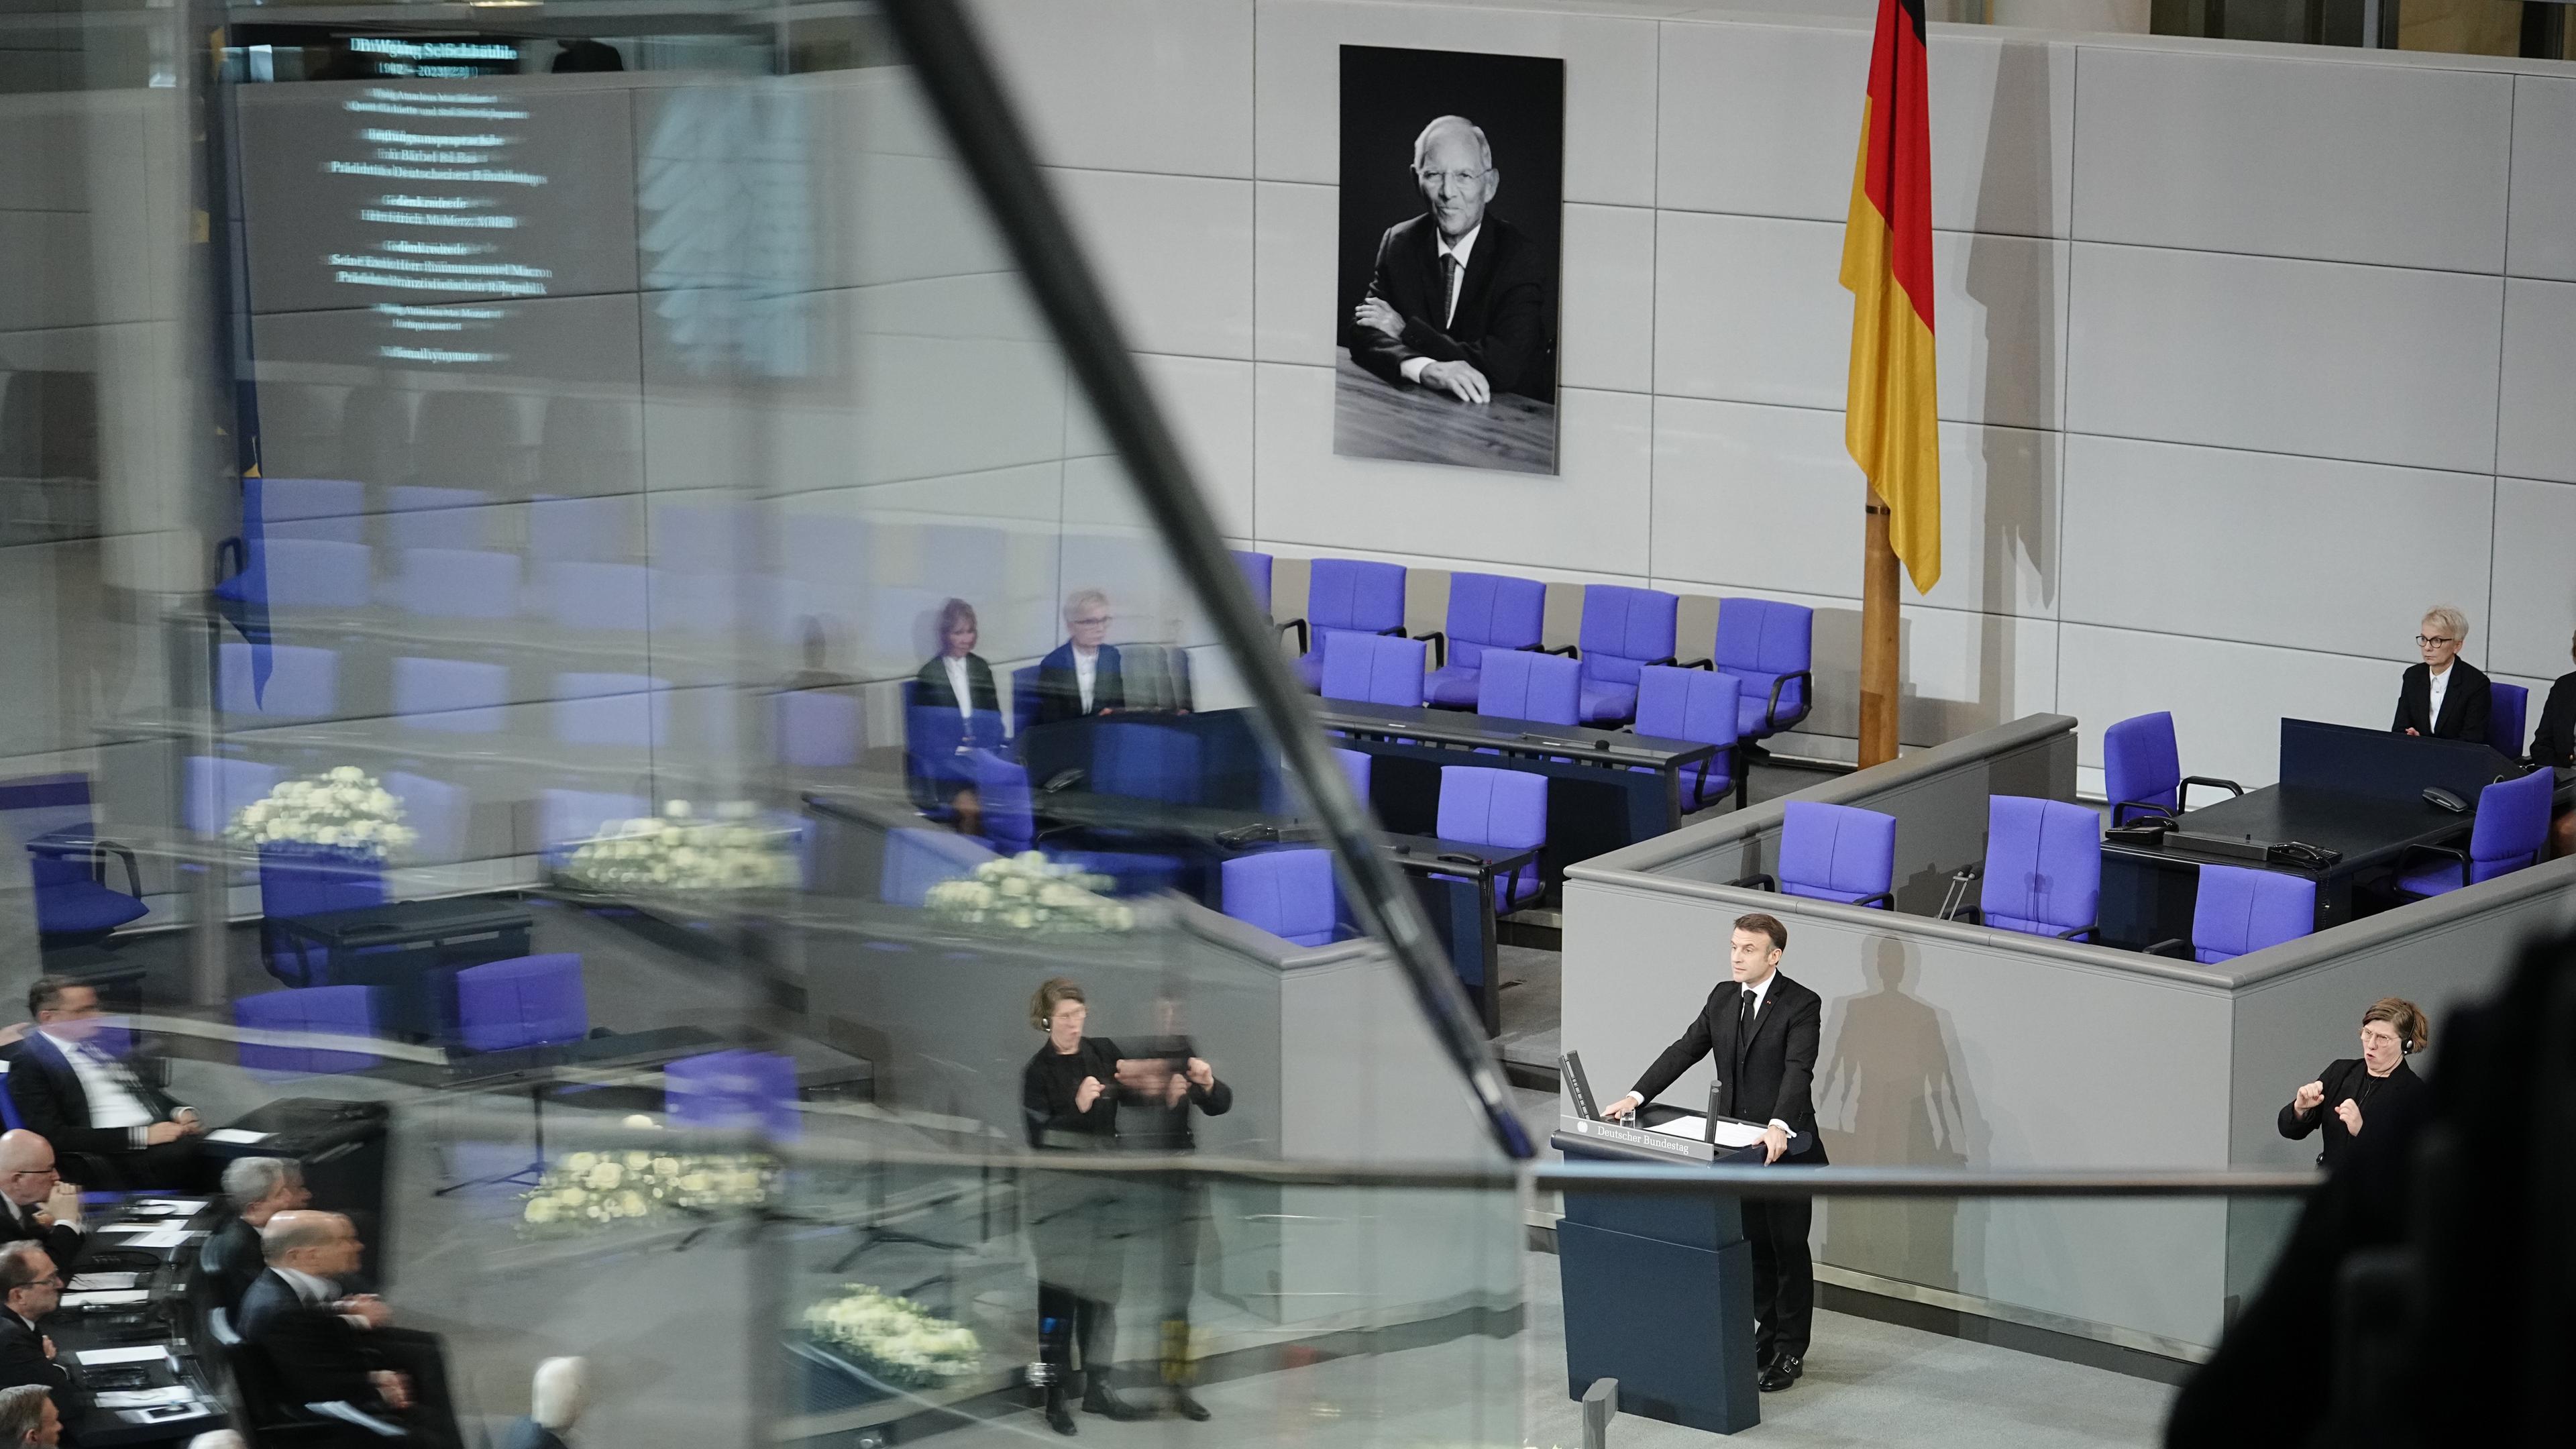  Emmanuel Macron, Präsident von Frankreich, spricht beim Trauerstaatsakt für den gestorbenen früheren Bundestagspräsidenten Wolfgang Schäuble im Plenarsaal im Deutschen Bundestag